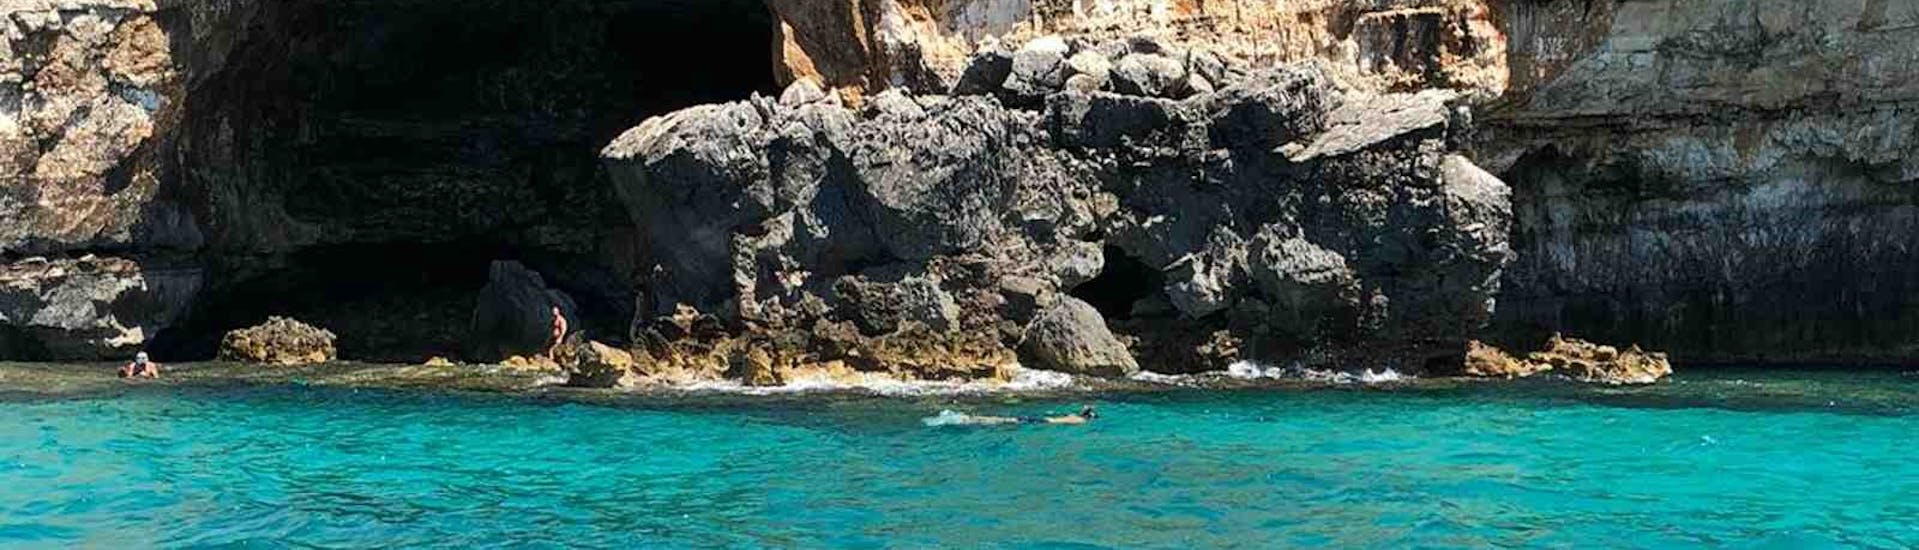 Vista di una persona che fa snorkeling durante il nostro Giro in barca alle grotte dello Ionio da Santa Maria Leuca con Leuca due Mari.